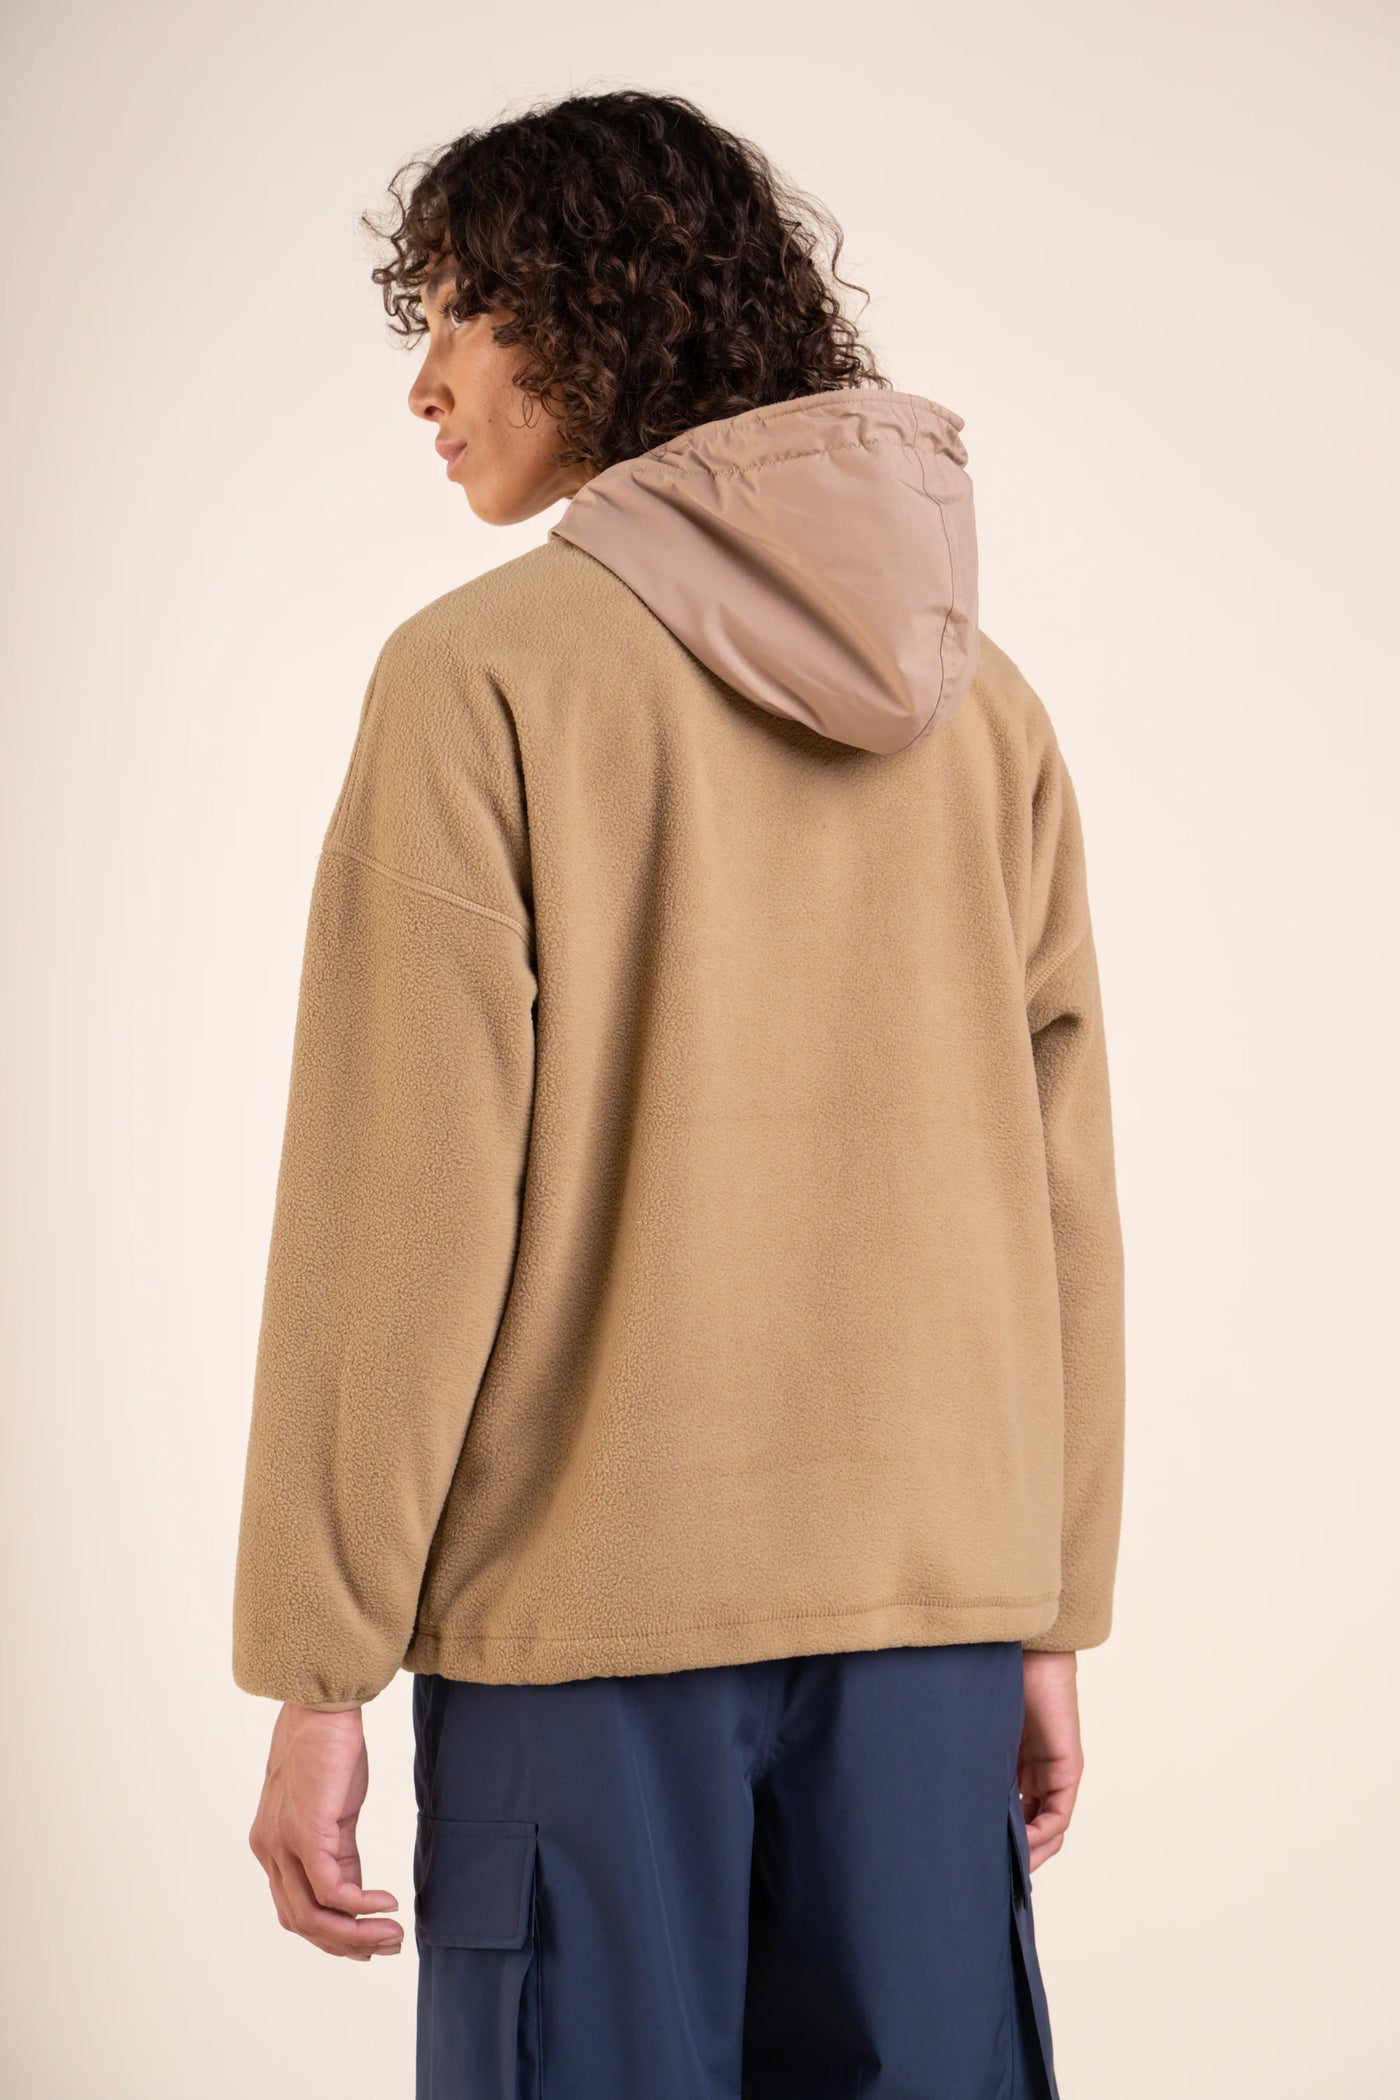 Belleville - Waterproof fleece hoodie - Flotte #couleur_sahara